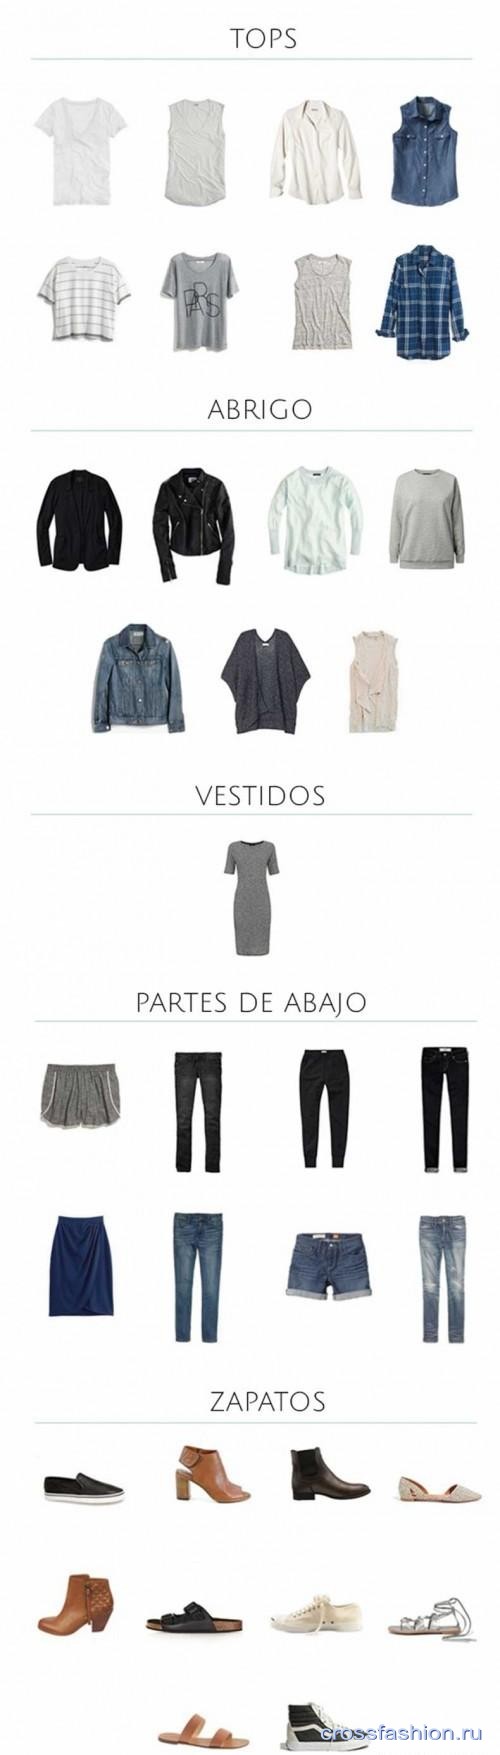 Каролина Ректор и ее минимализм: идеи капсульного гардероба из блога Un-Fancy